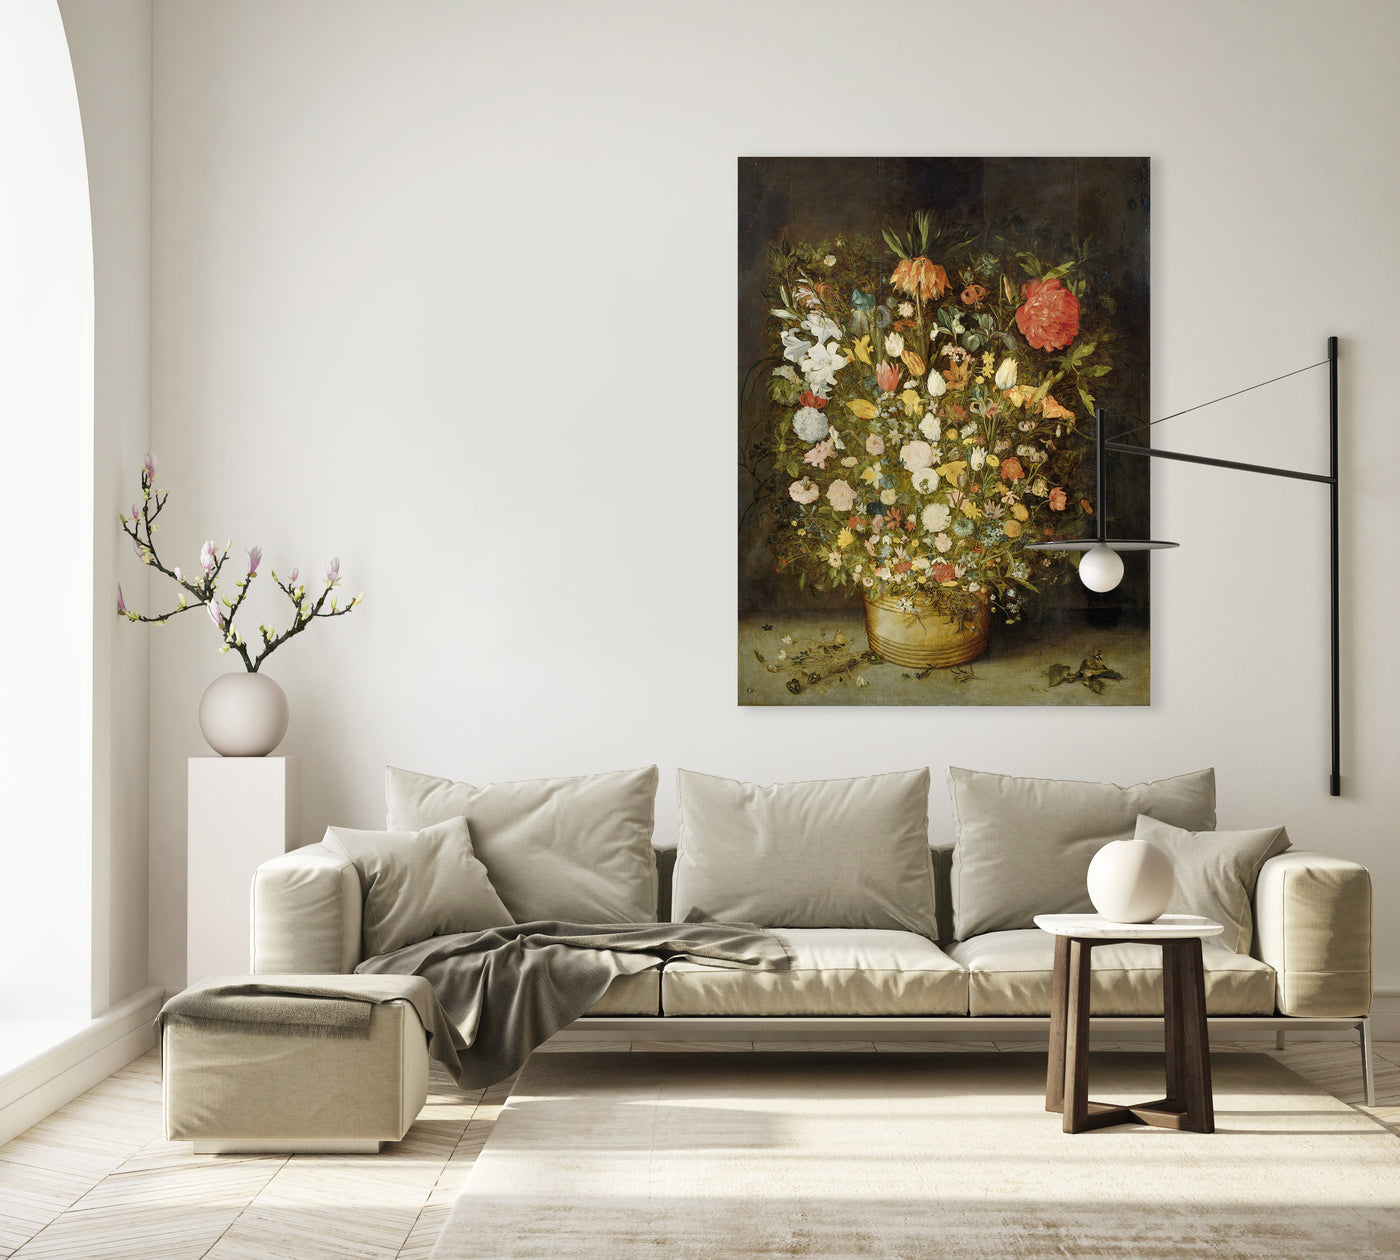 Stilleven met bloemen - Jan Brueghel